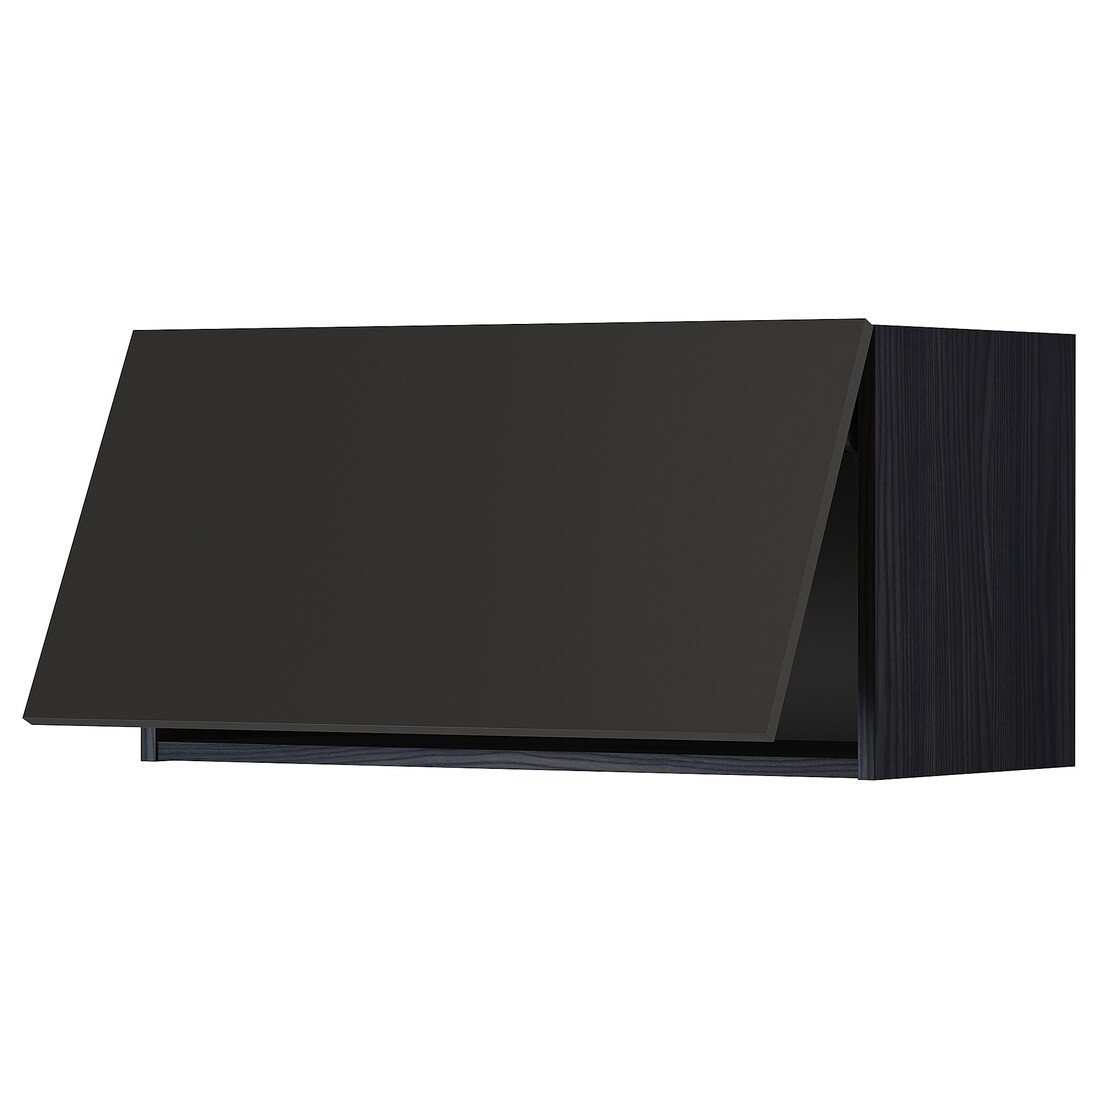 METOD МЕТОД Навесной горизонтальный шкаф, черный / Nickebo матовый антрацит, 80x40 см